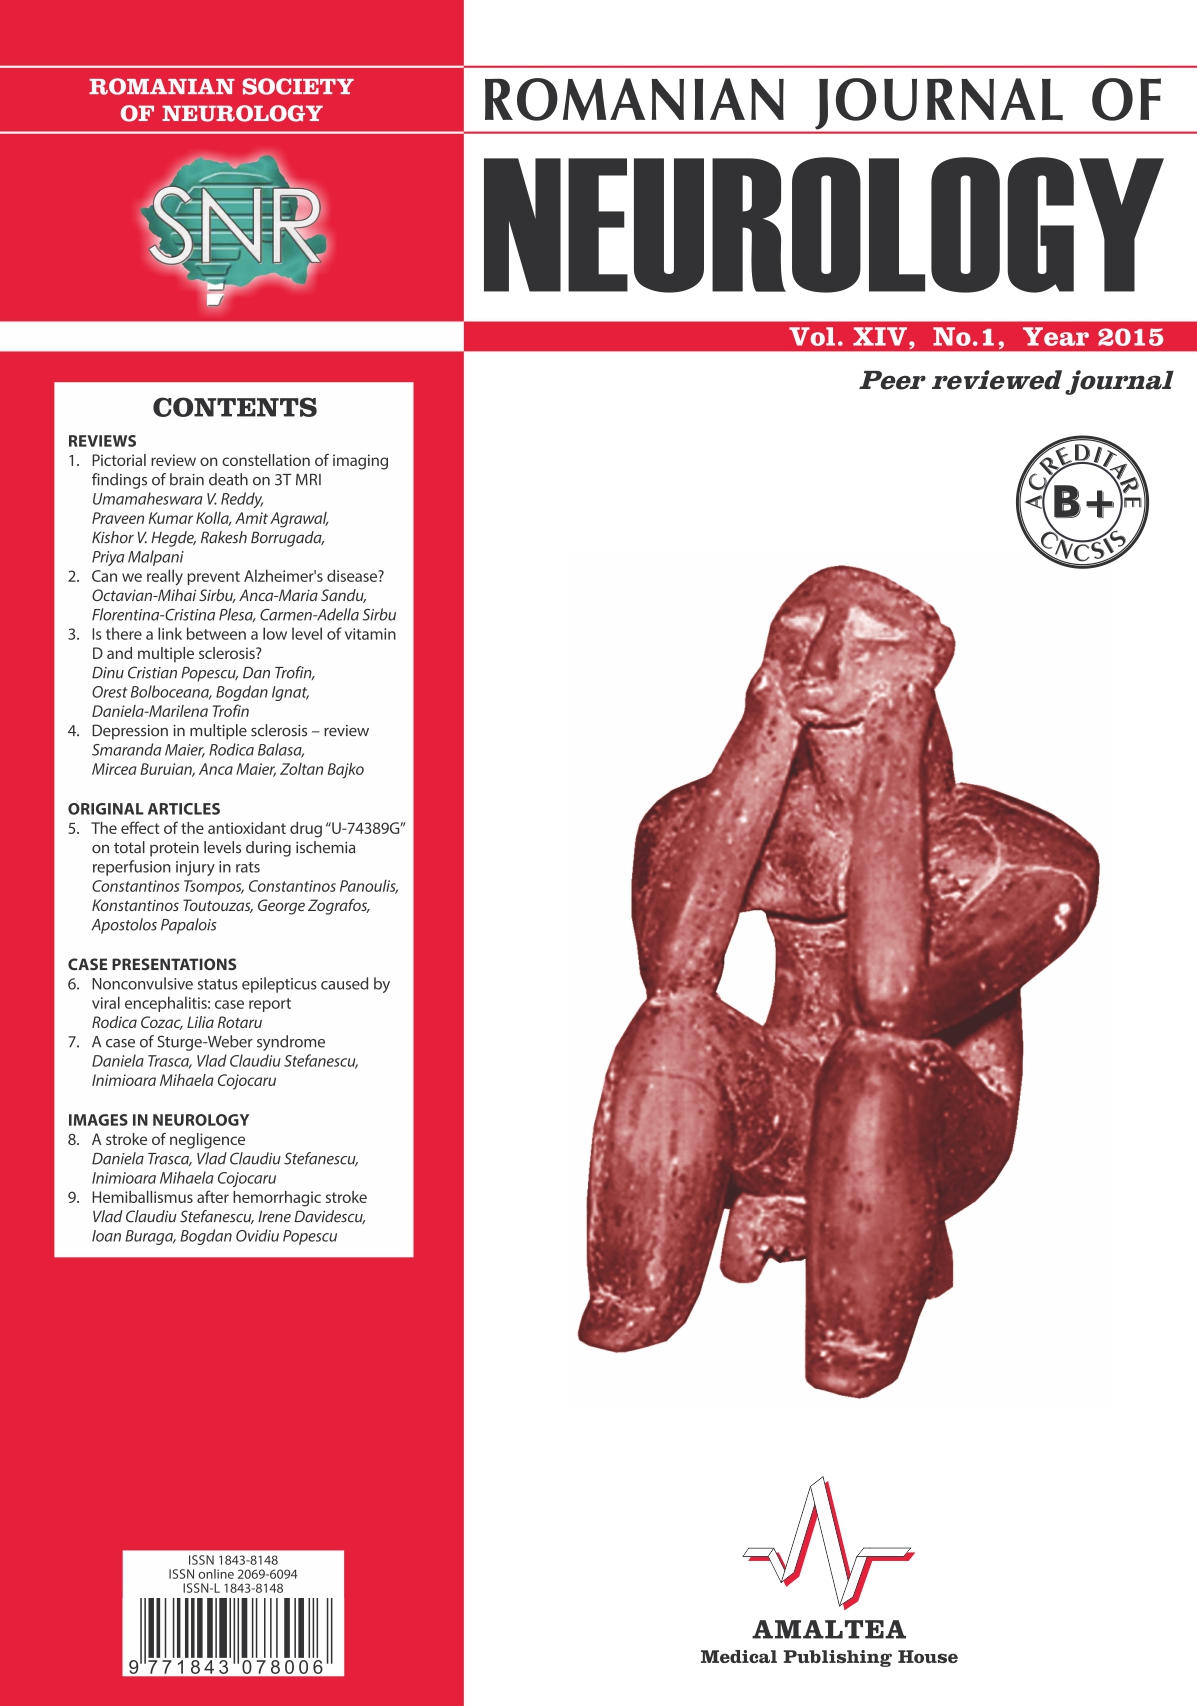 Romanian Journal of Neurology, Volume XIV, No. 1, 2015